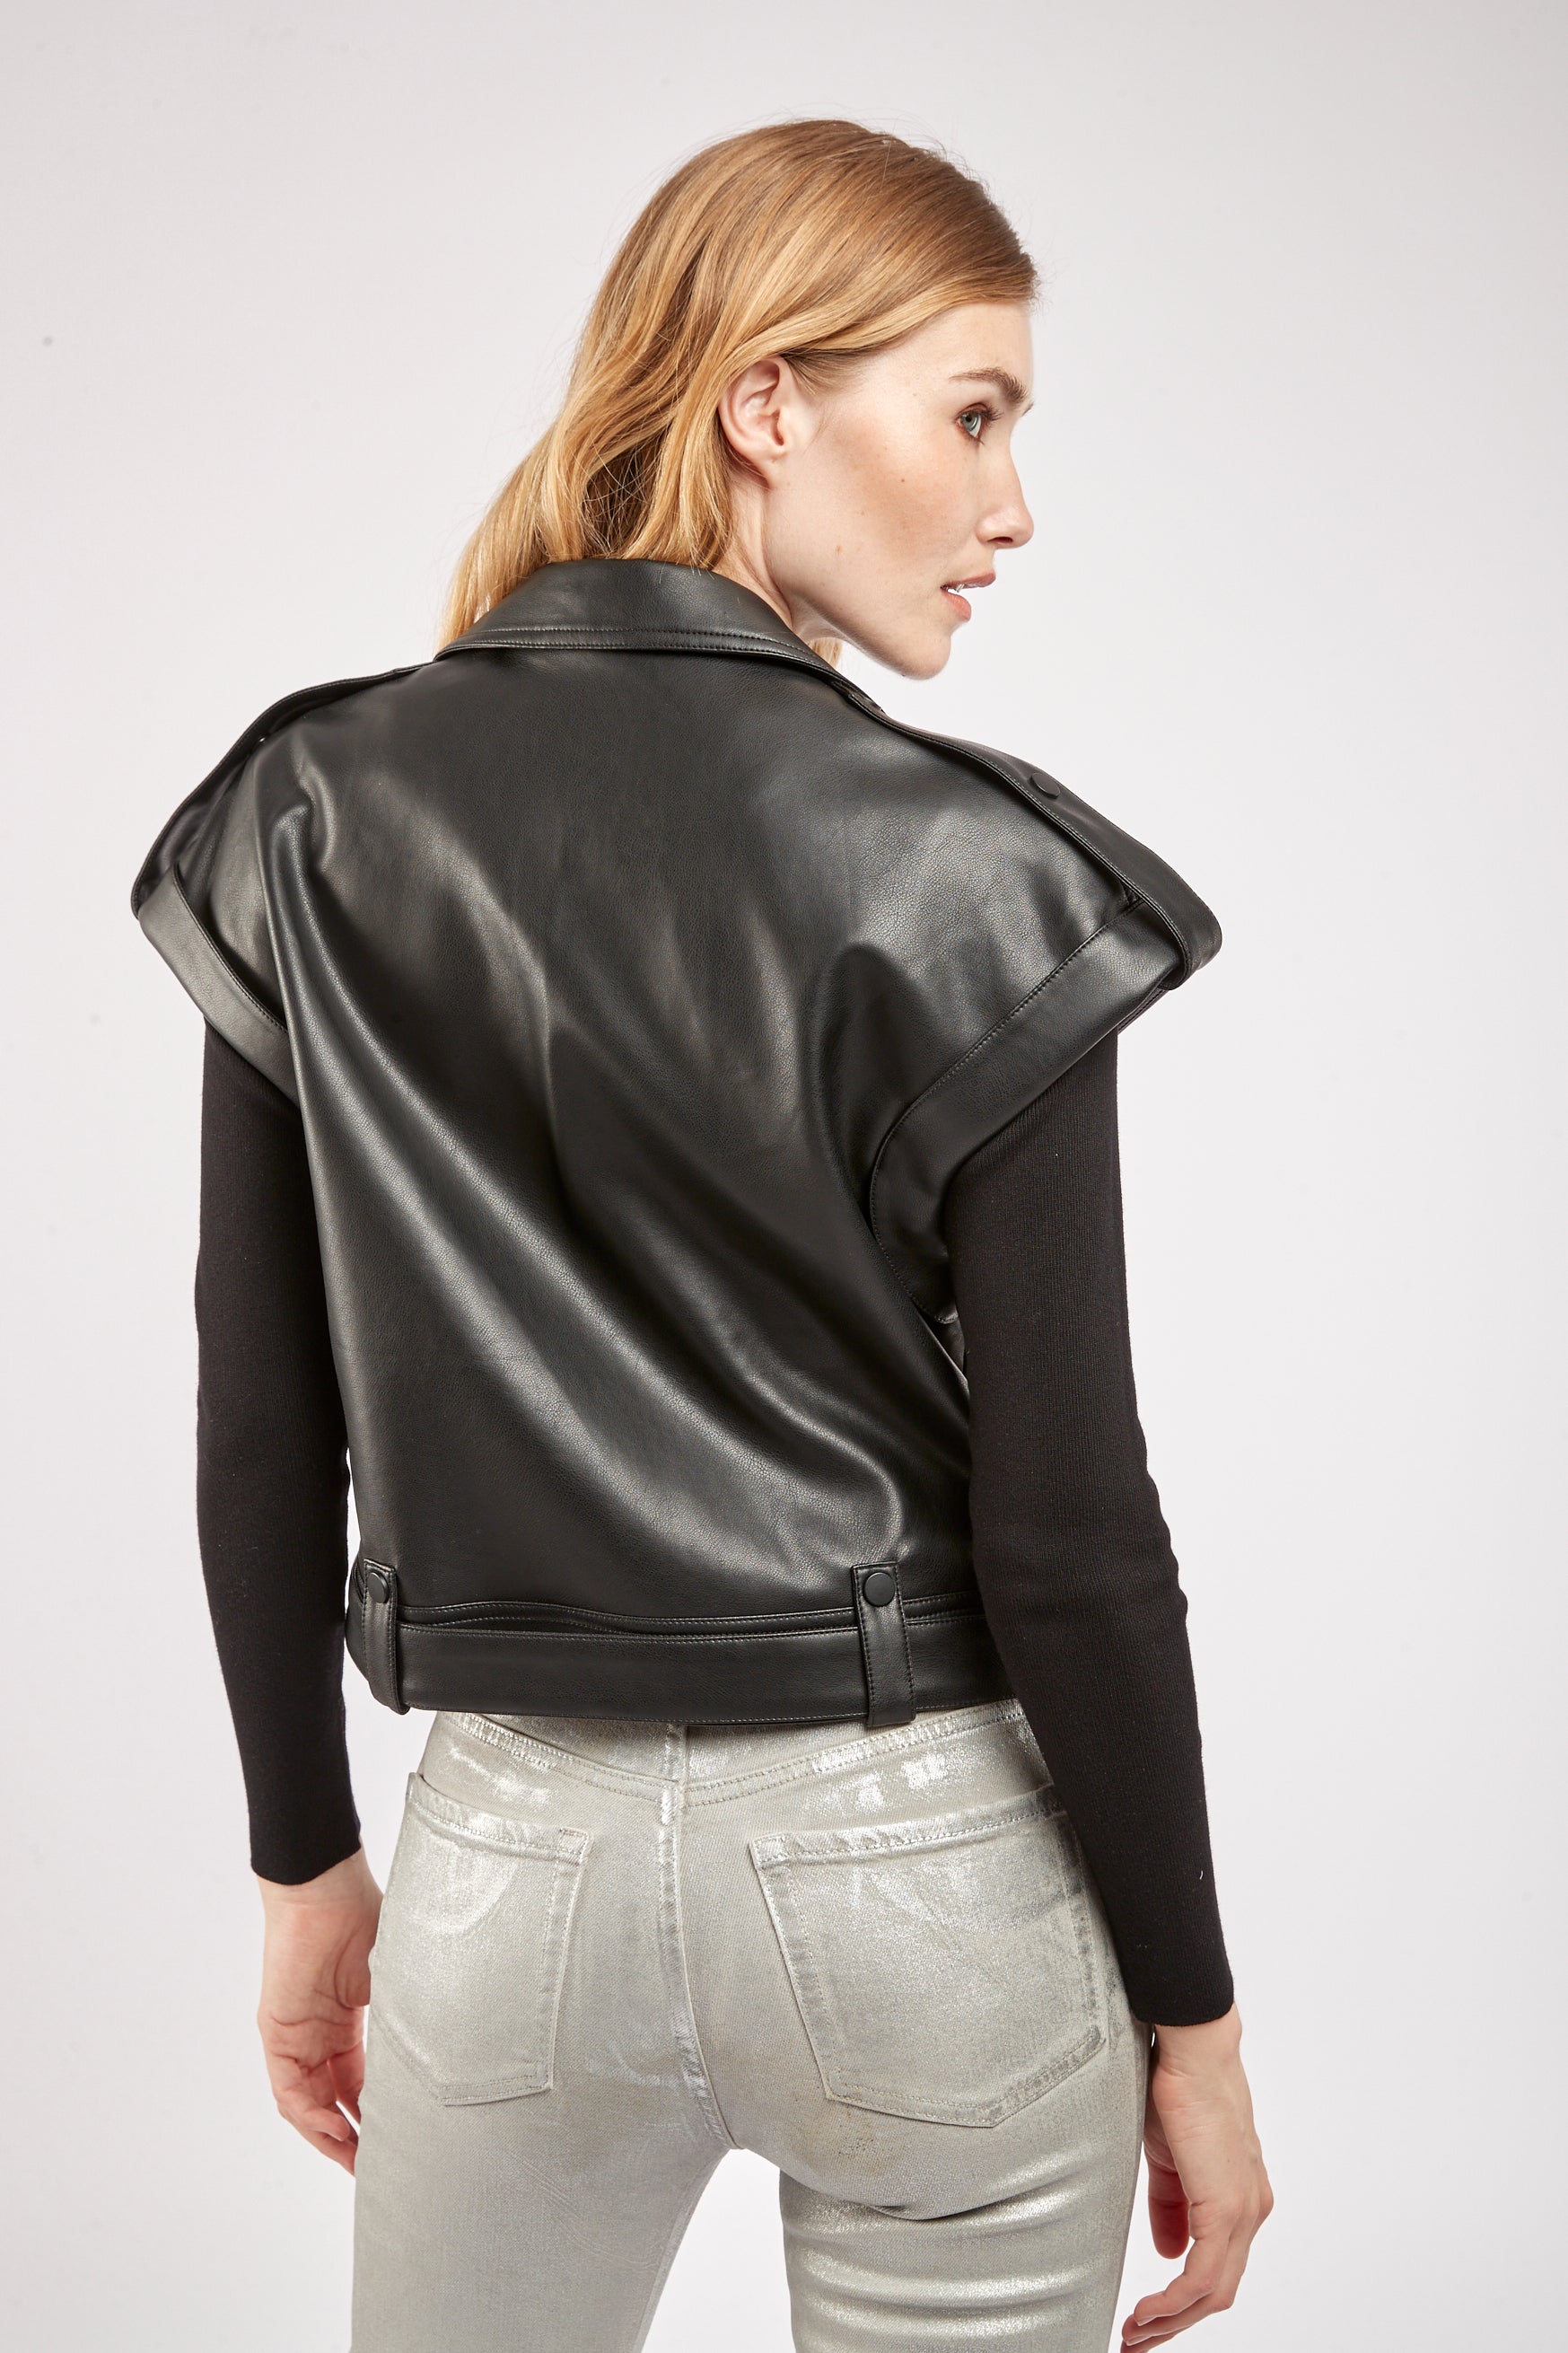 Leather imitation leather - goal biket jacket